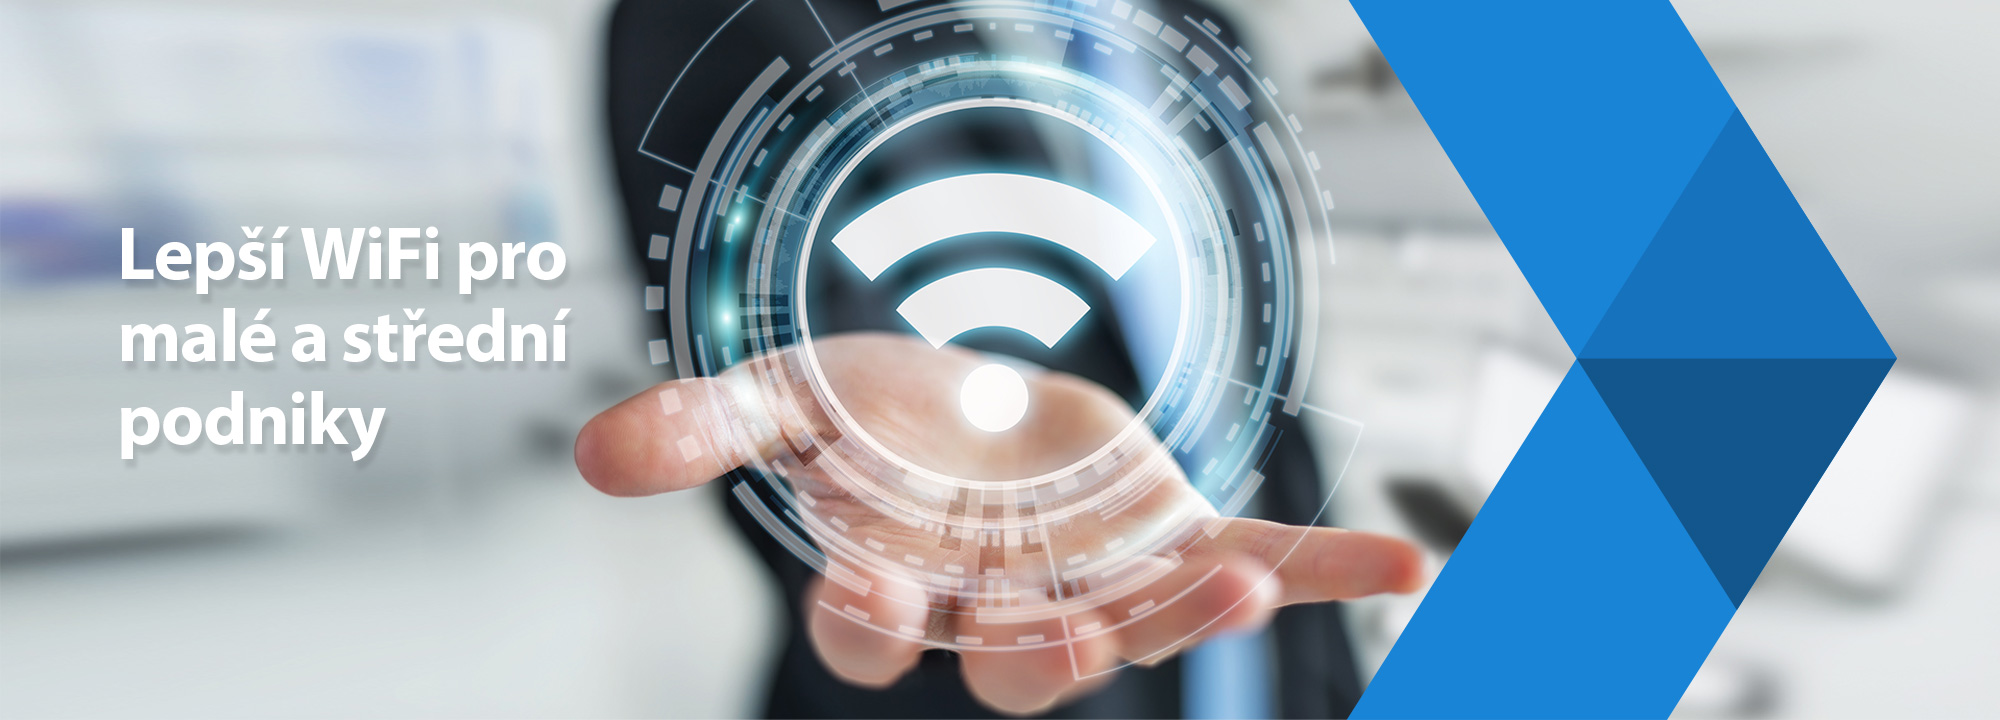 ASUS Lepší WiFi pro malé a střední podniky